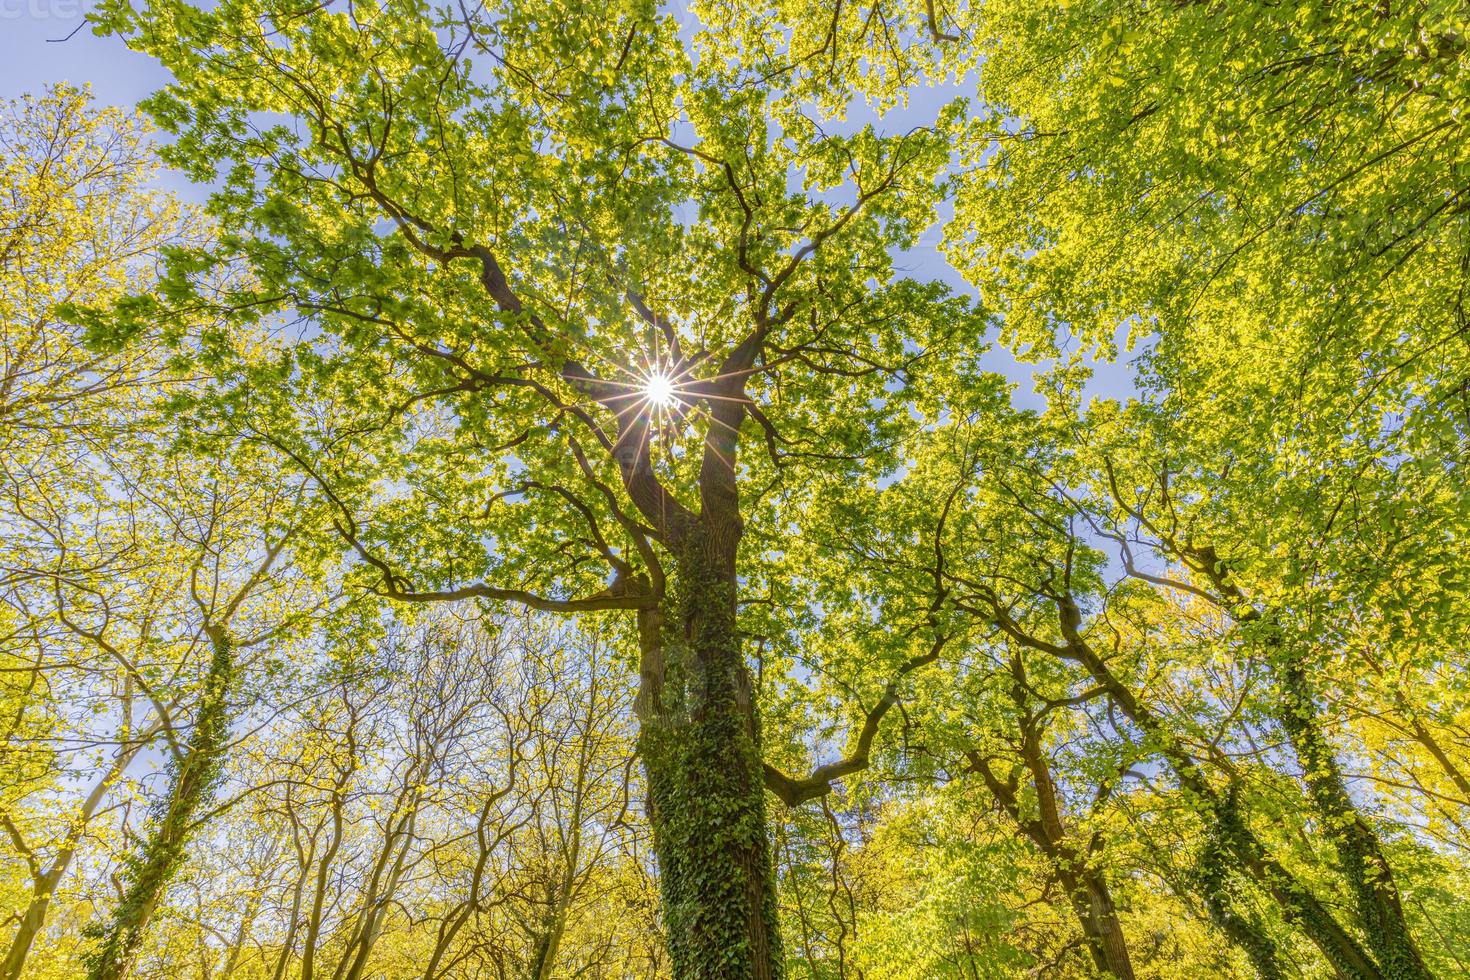 árboles del bosque de primavera verano. fondos de la luz del sol de la madera verde de la naturaleza. idílico paisaje natural tranquilo, caminata pacífica o diseño de fondo de bosque de caminata foto